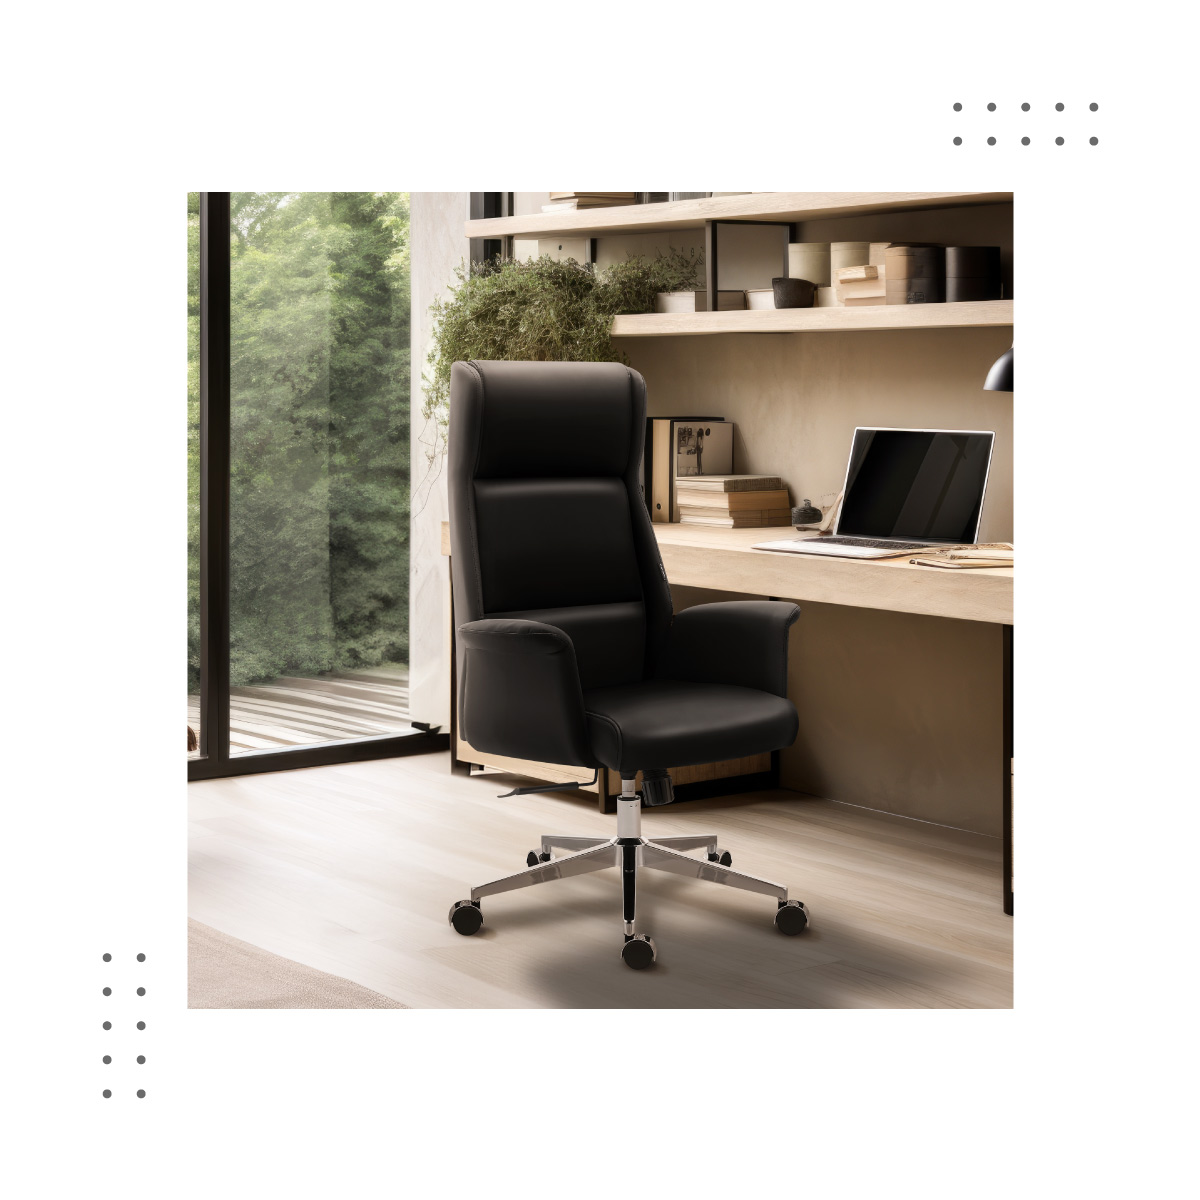 Boss 5.6 biuro fotelio kambario išplanavimas